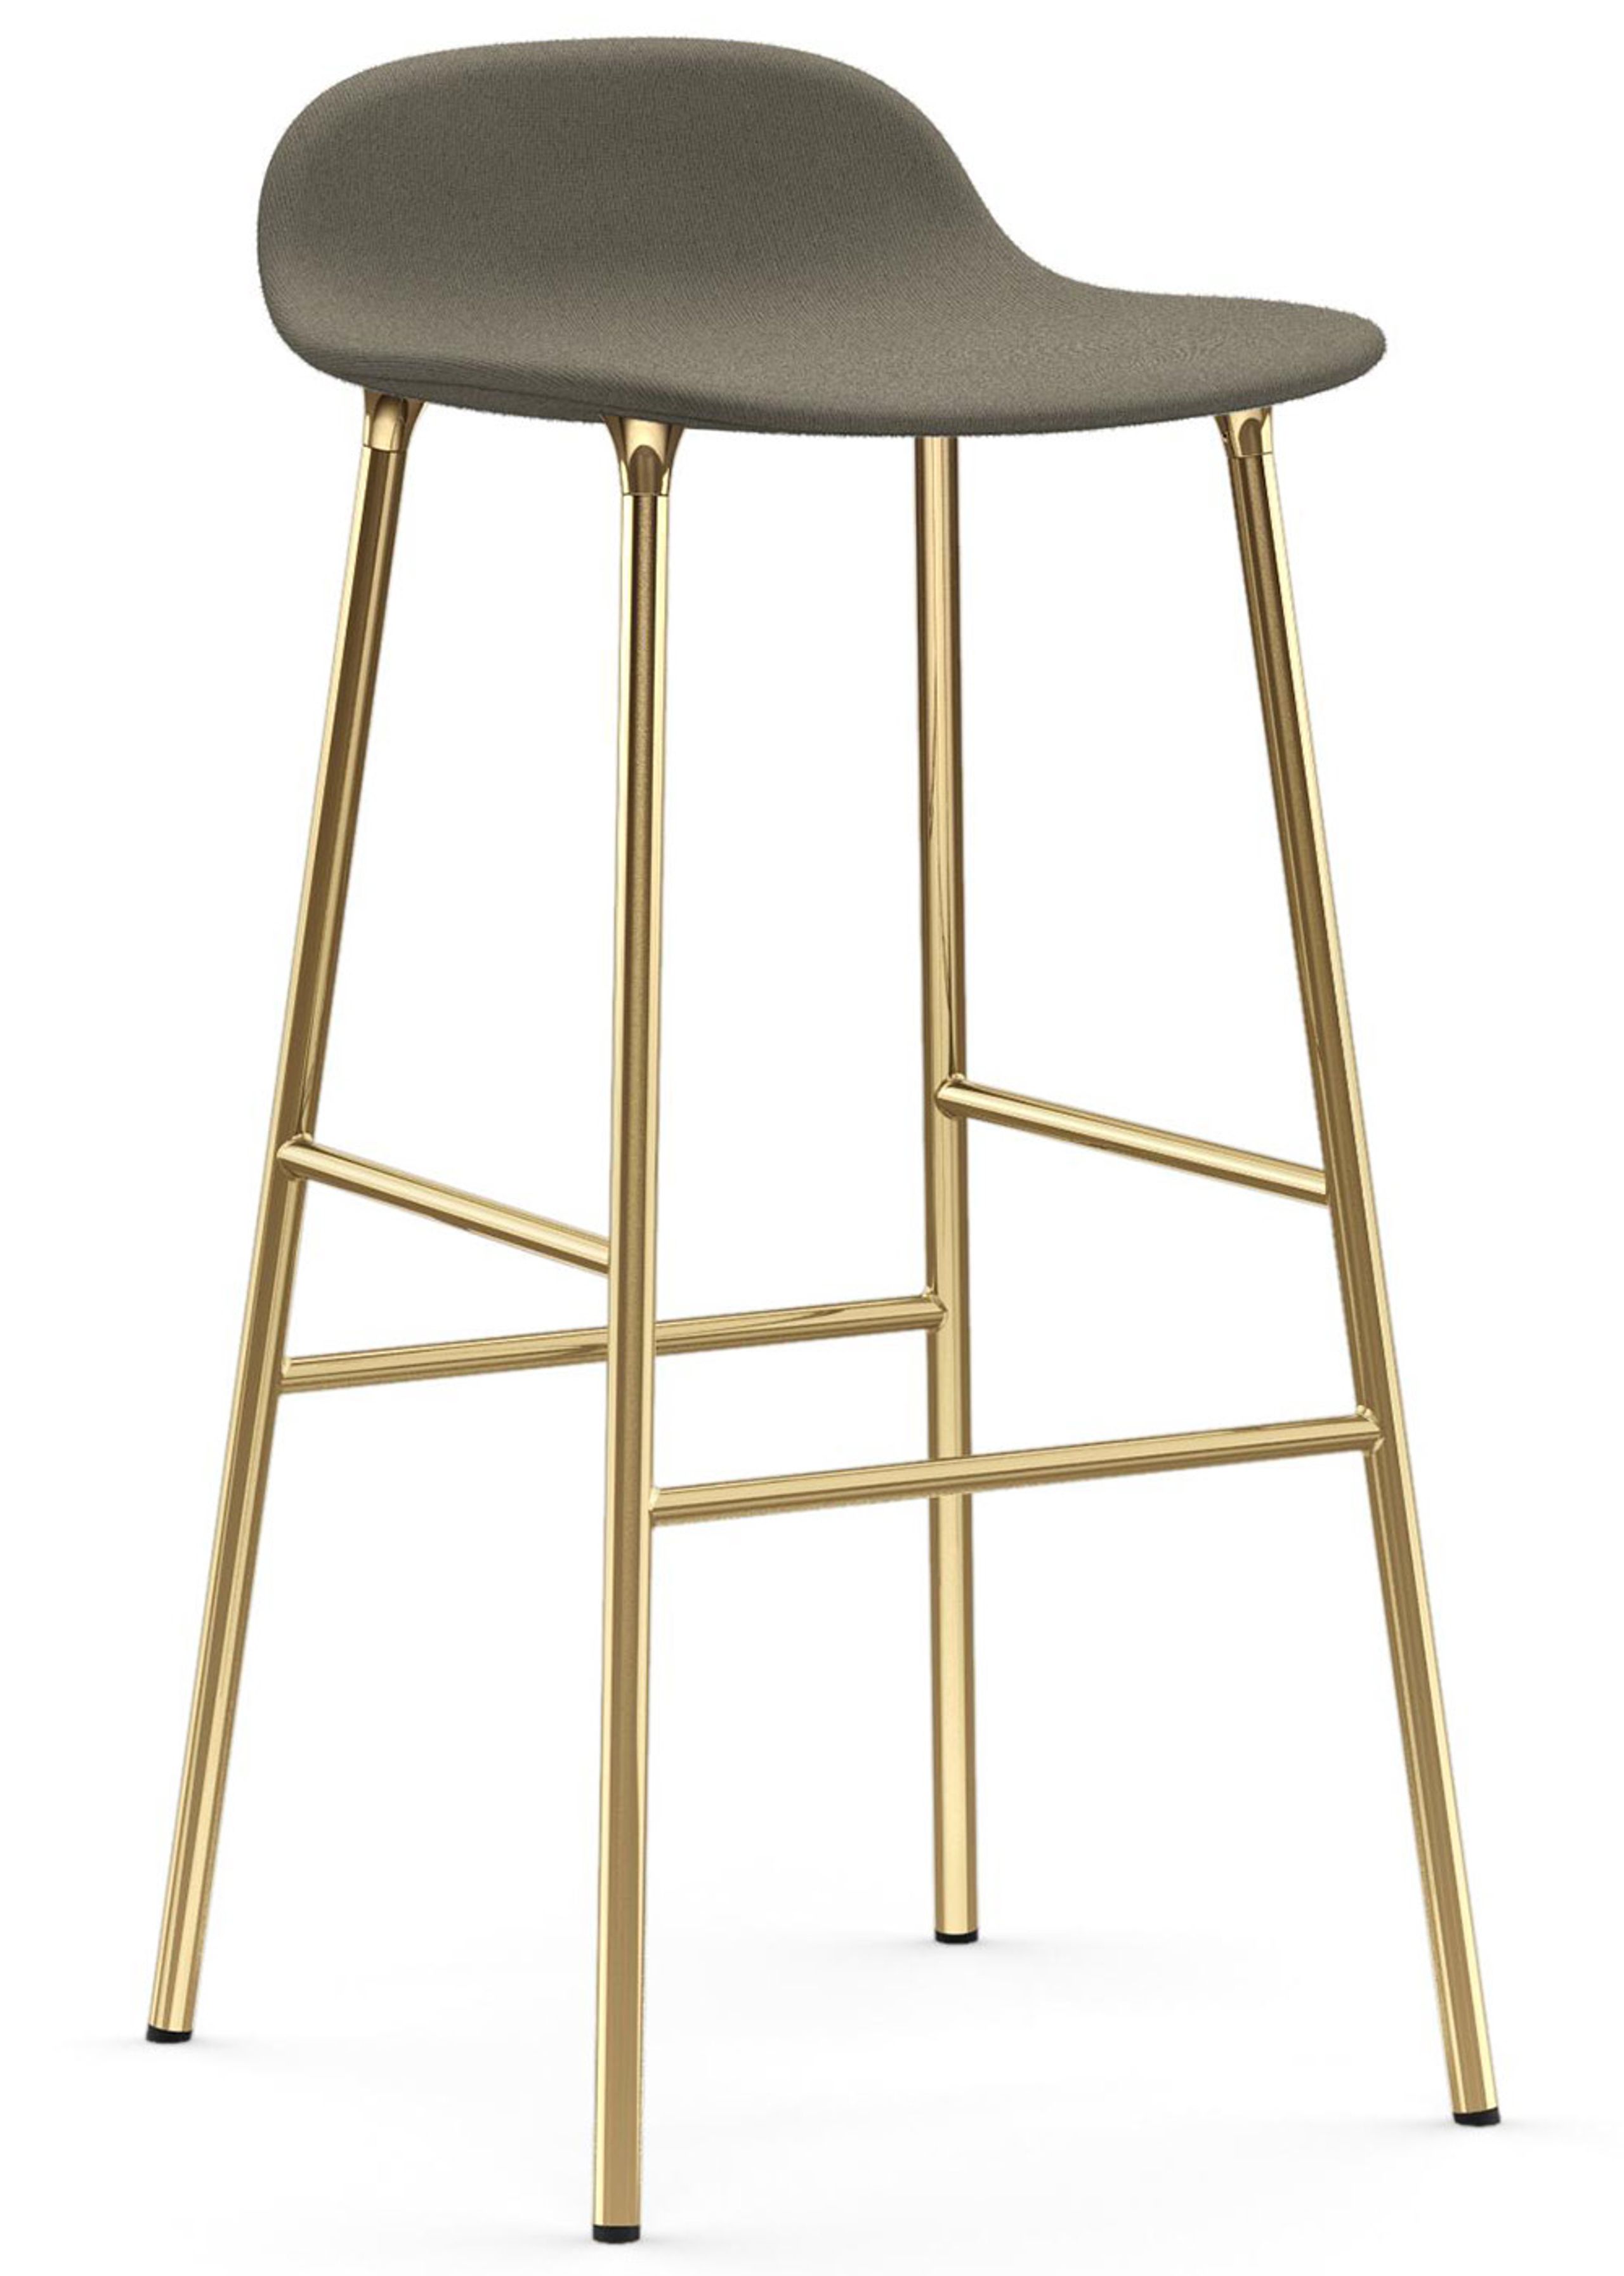 form barstool  75 cm  full upholstery steel chrome  brass  bar stool   normann copenhagen